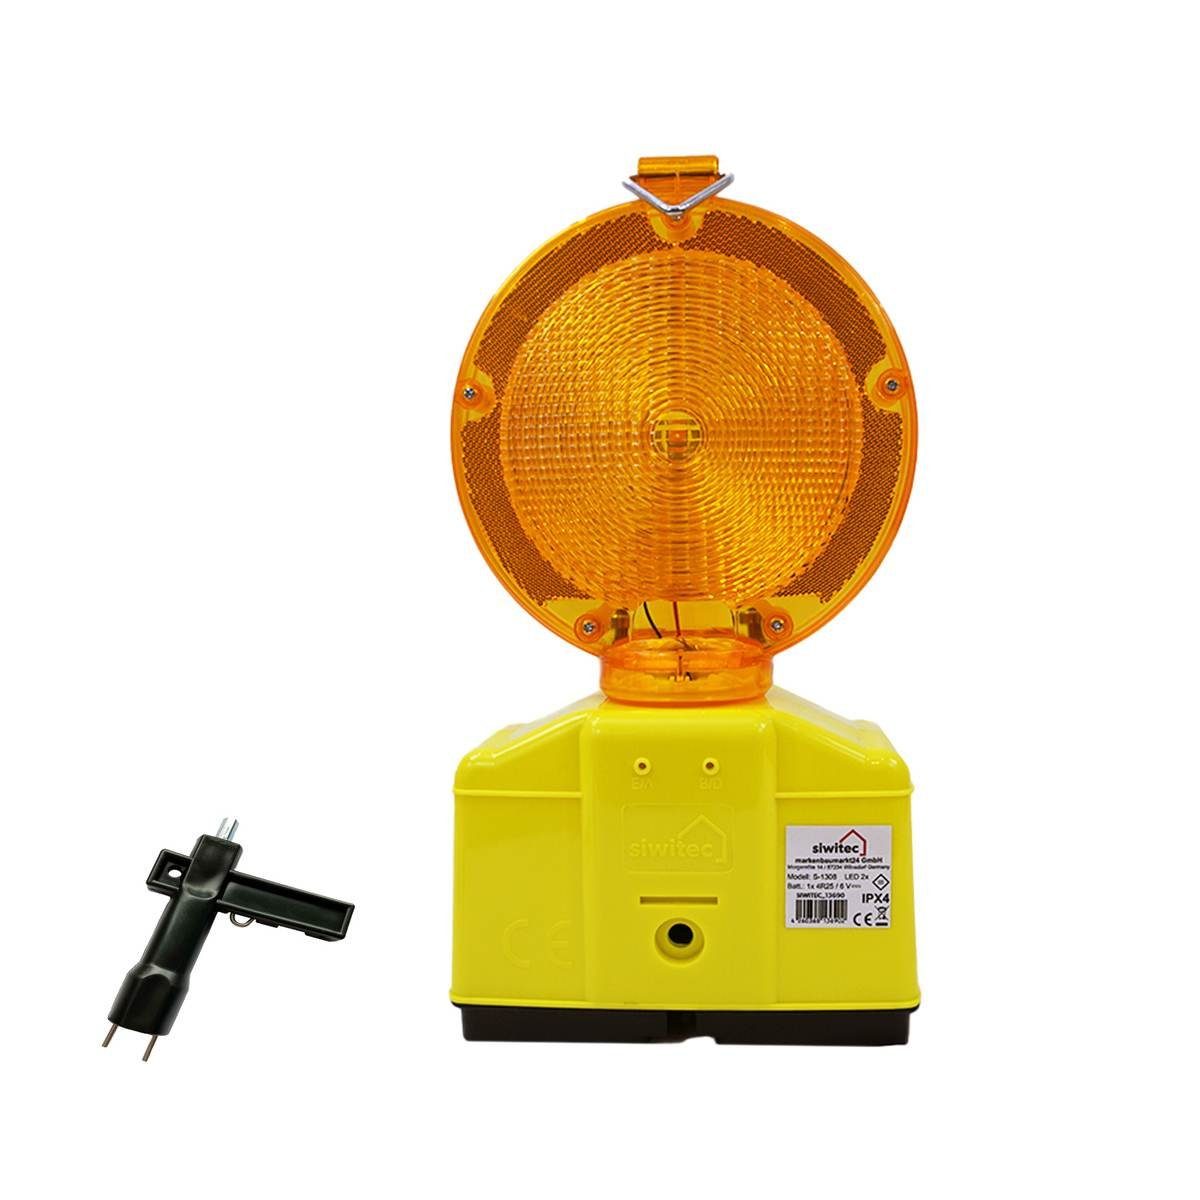 siwitec Baustrahler LED Warnleuchte mit Dämmerungssensor und Lampenschlüssel, Blink- und Dauerlichtfunktion, Dämmerungsautomatik